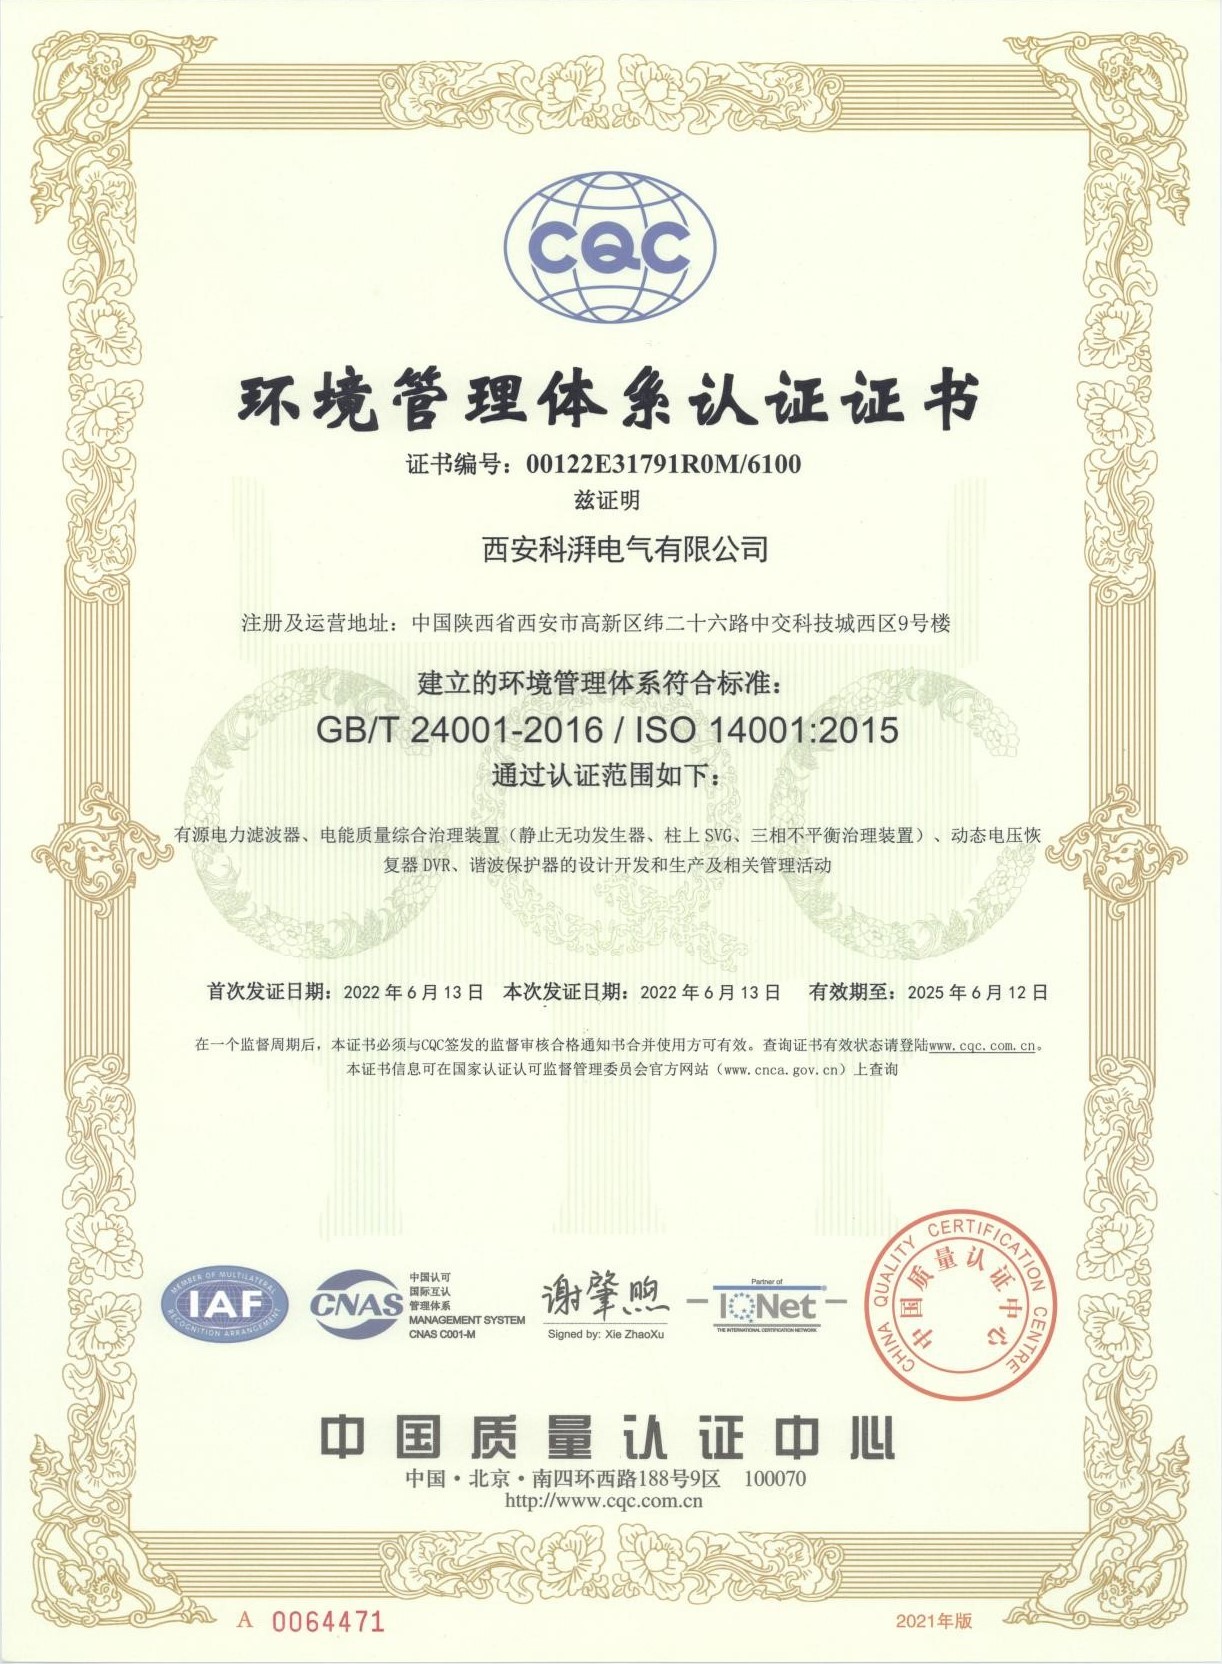  环境管理体系认证证书--中文